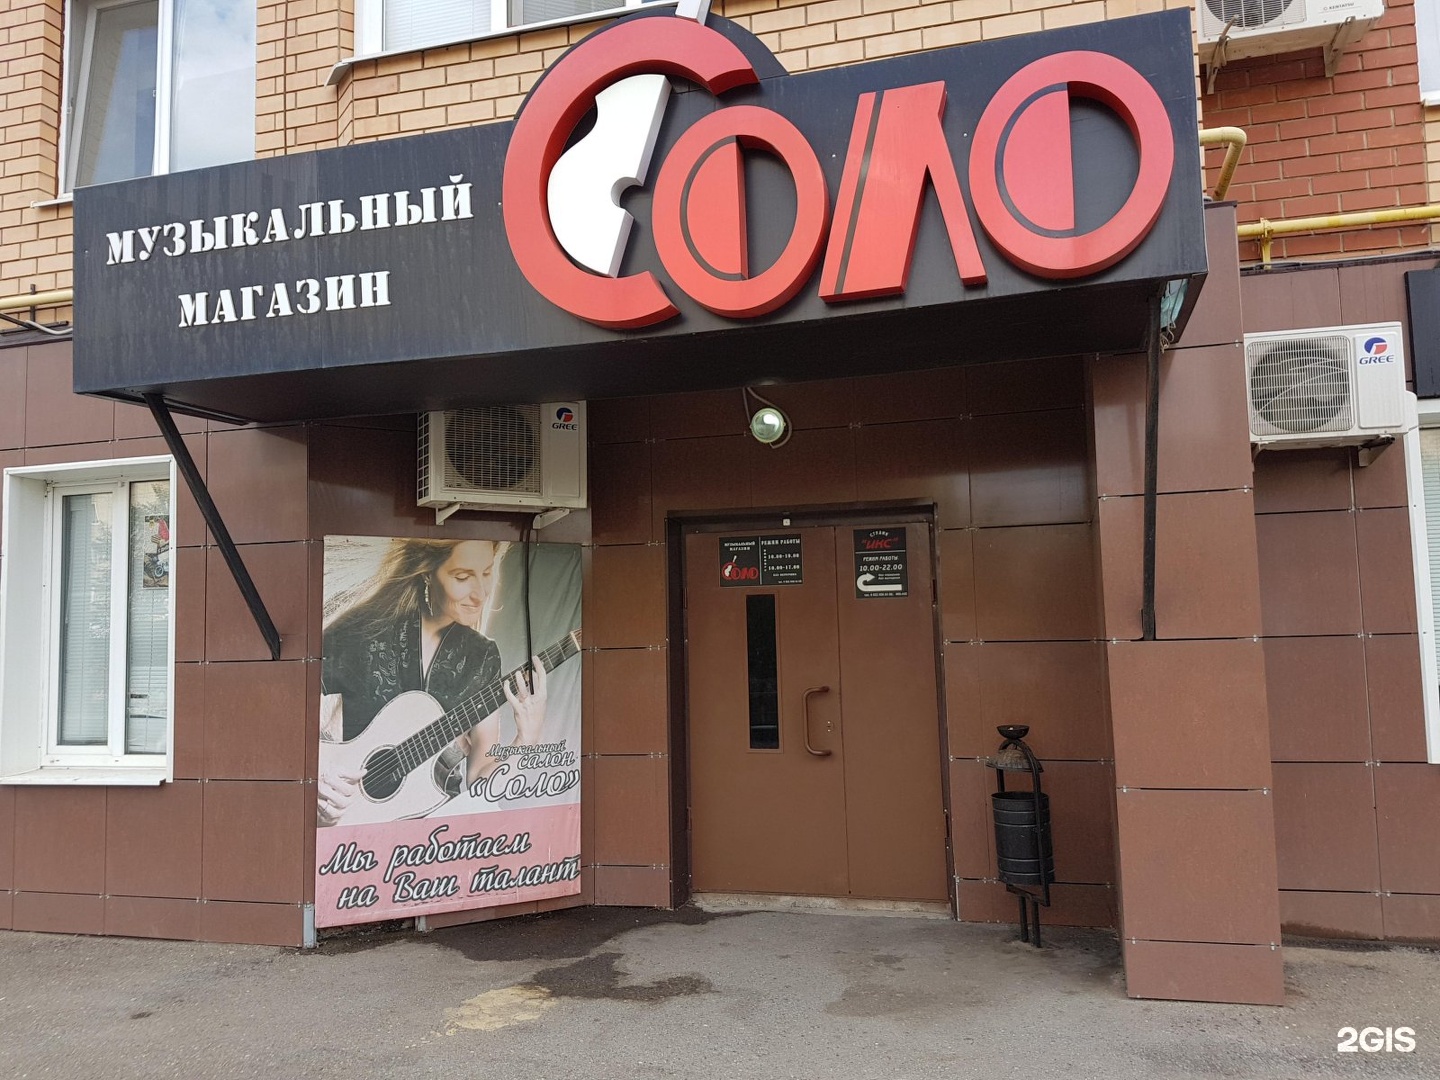 Соло Музыкальный Магазин Оренбург